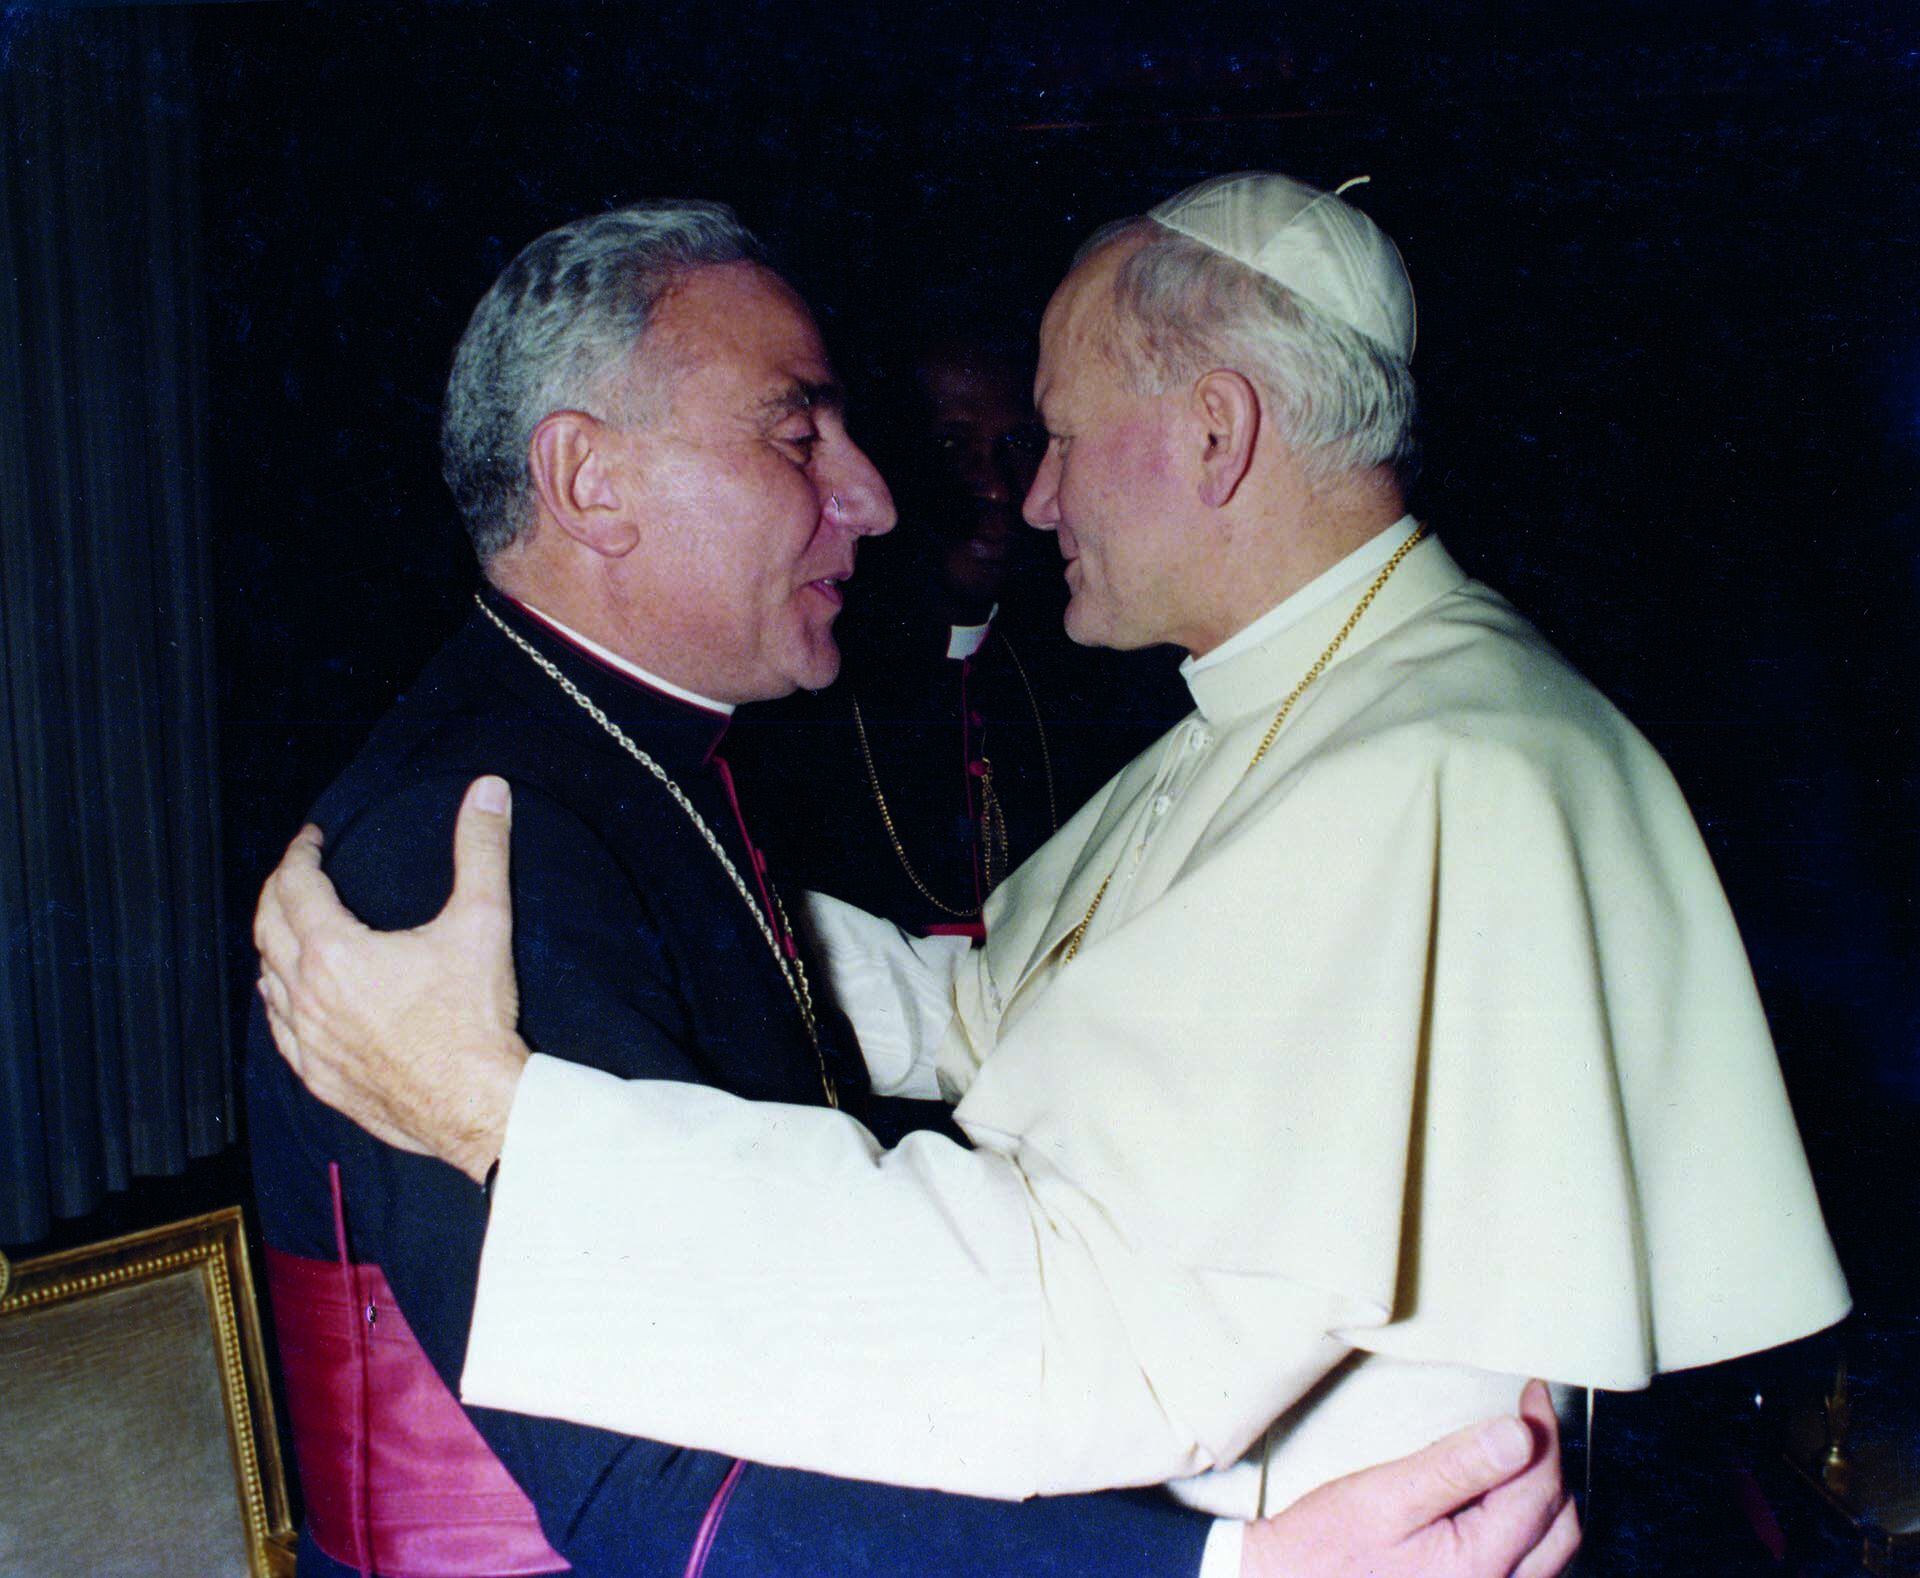 Cardenal Eduardo Pironio
Acción católica Argentina